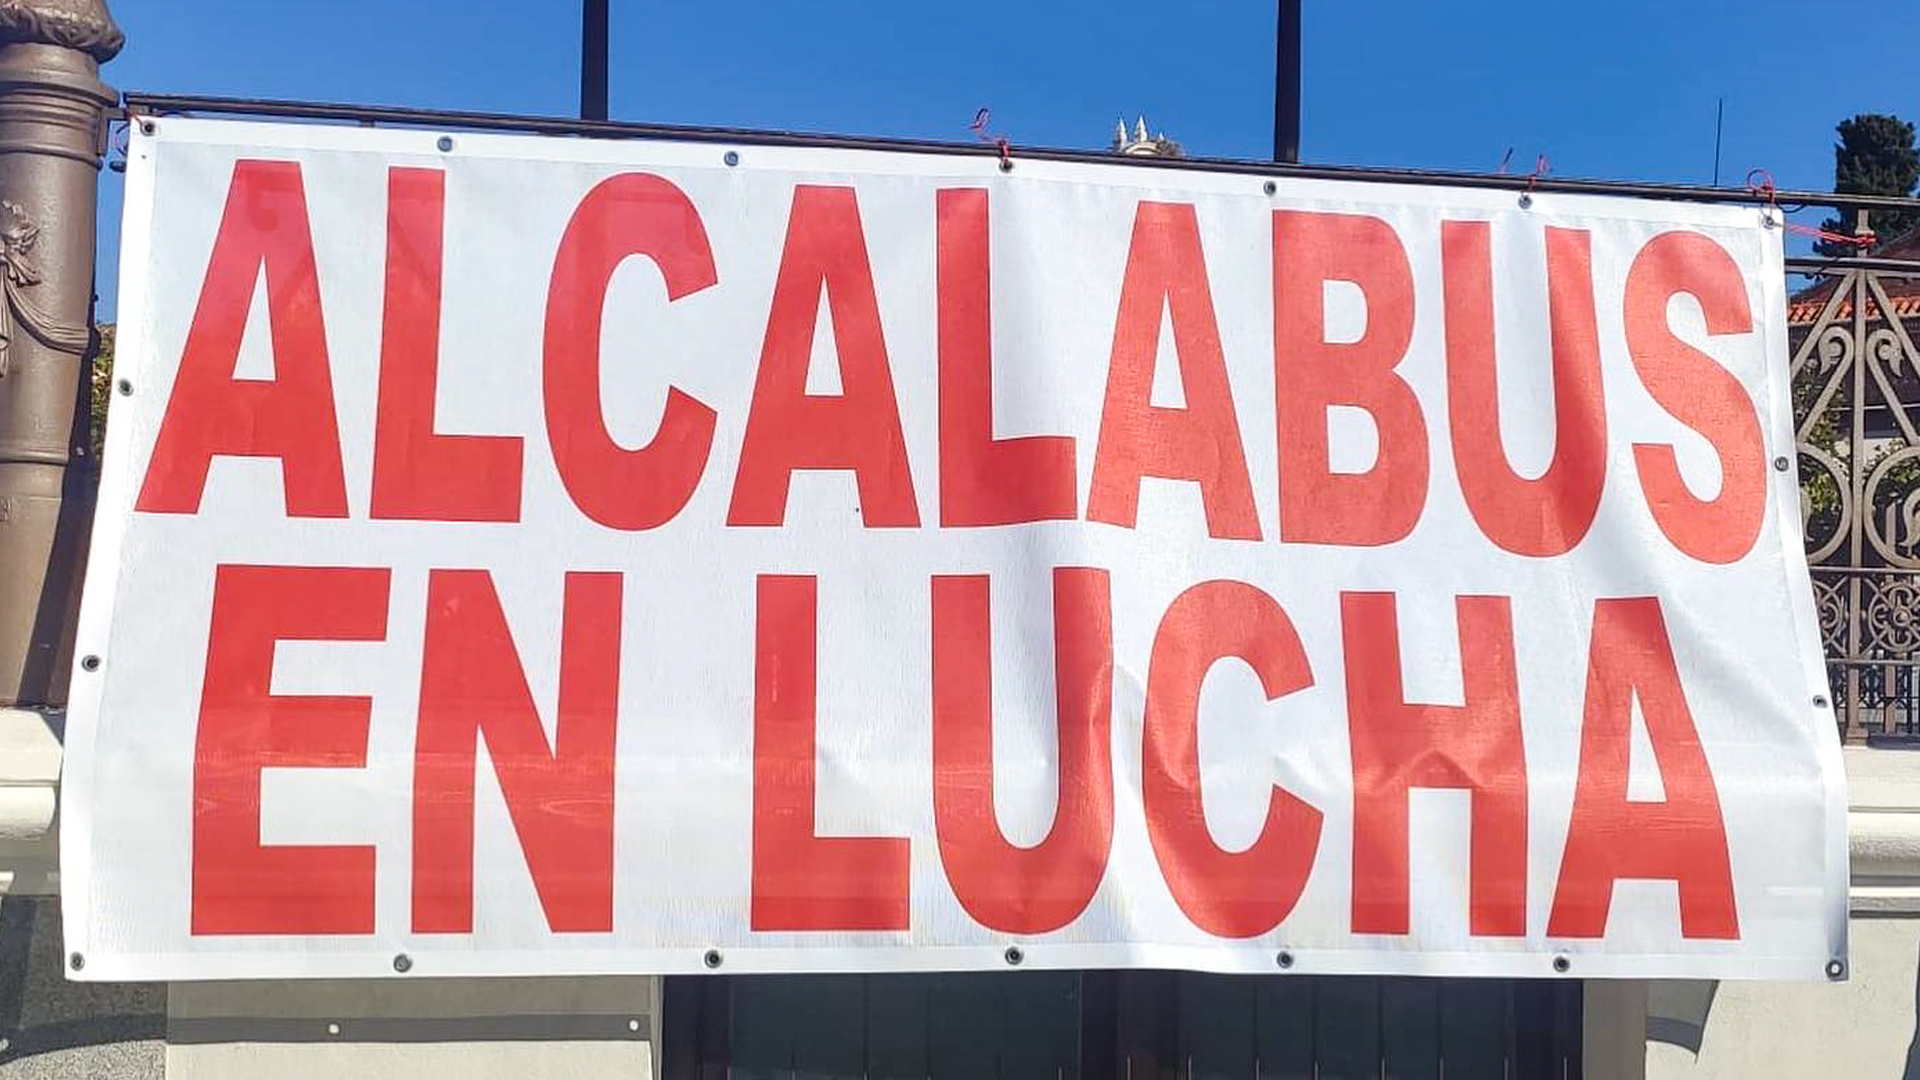 IU Alcalá apoya las reivindicaciones de Alcalabus